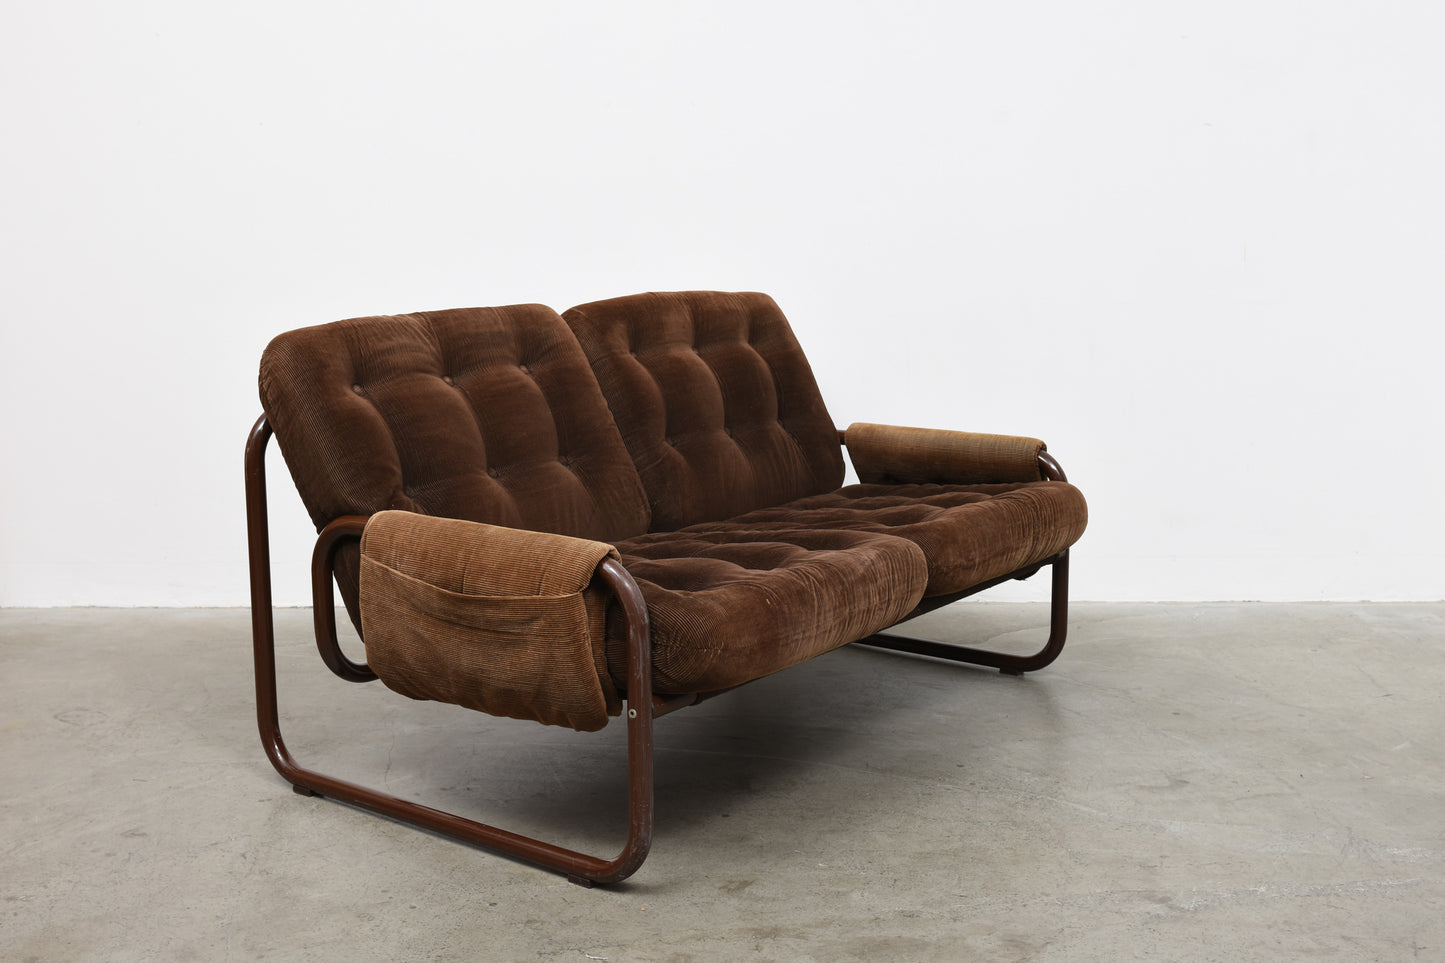 Two seat sofa by John Bertil Häggström